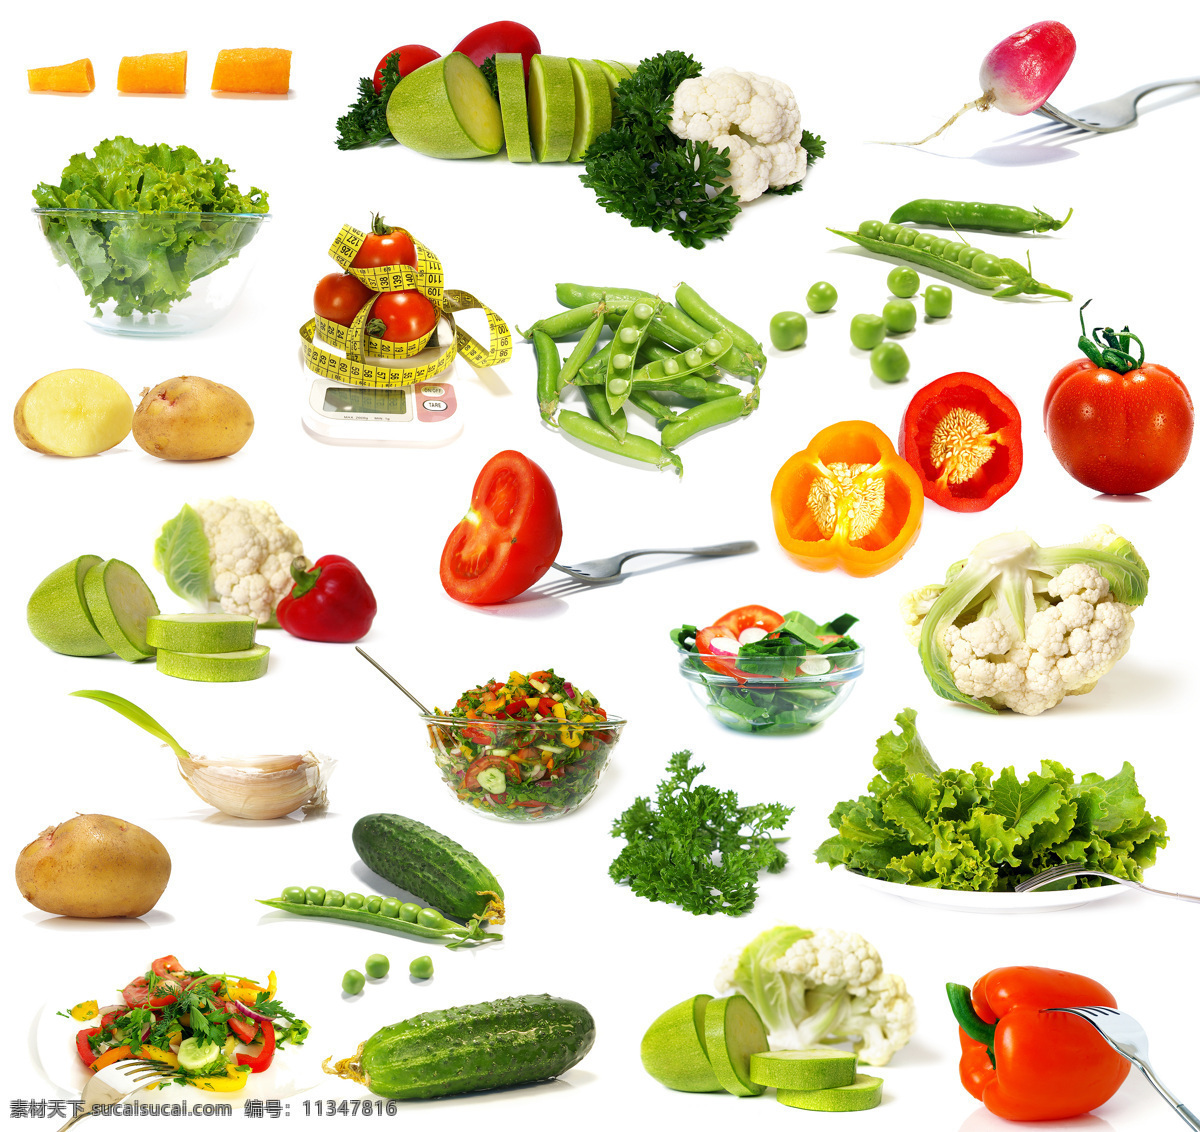 健康蔬菜 尖椒 西红柿 黄瓜 红萝卜 土豆 菜花 水萝卜 生菜 西葫芦 青椒 绿色蔬菜 蔬菜 生物世界